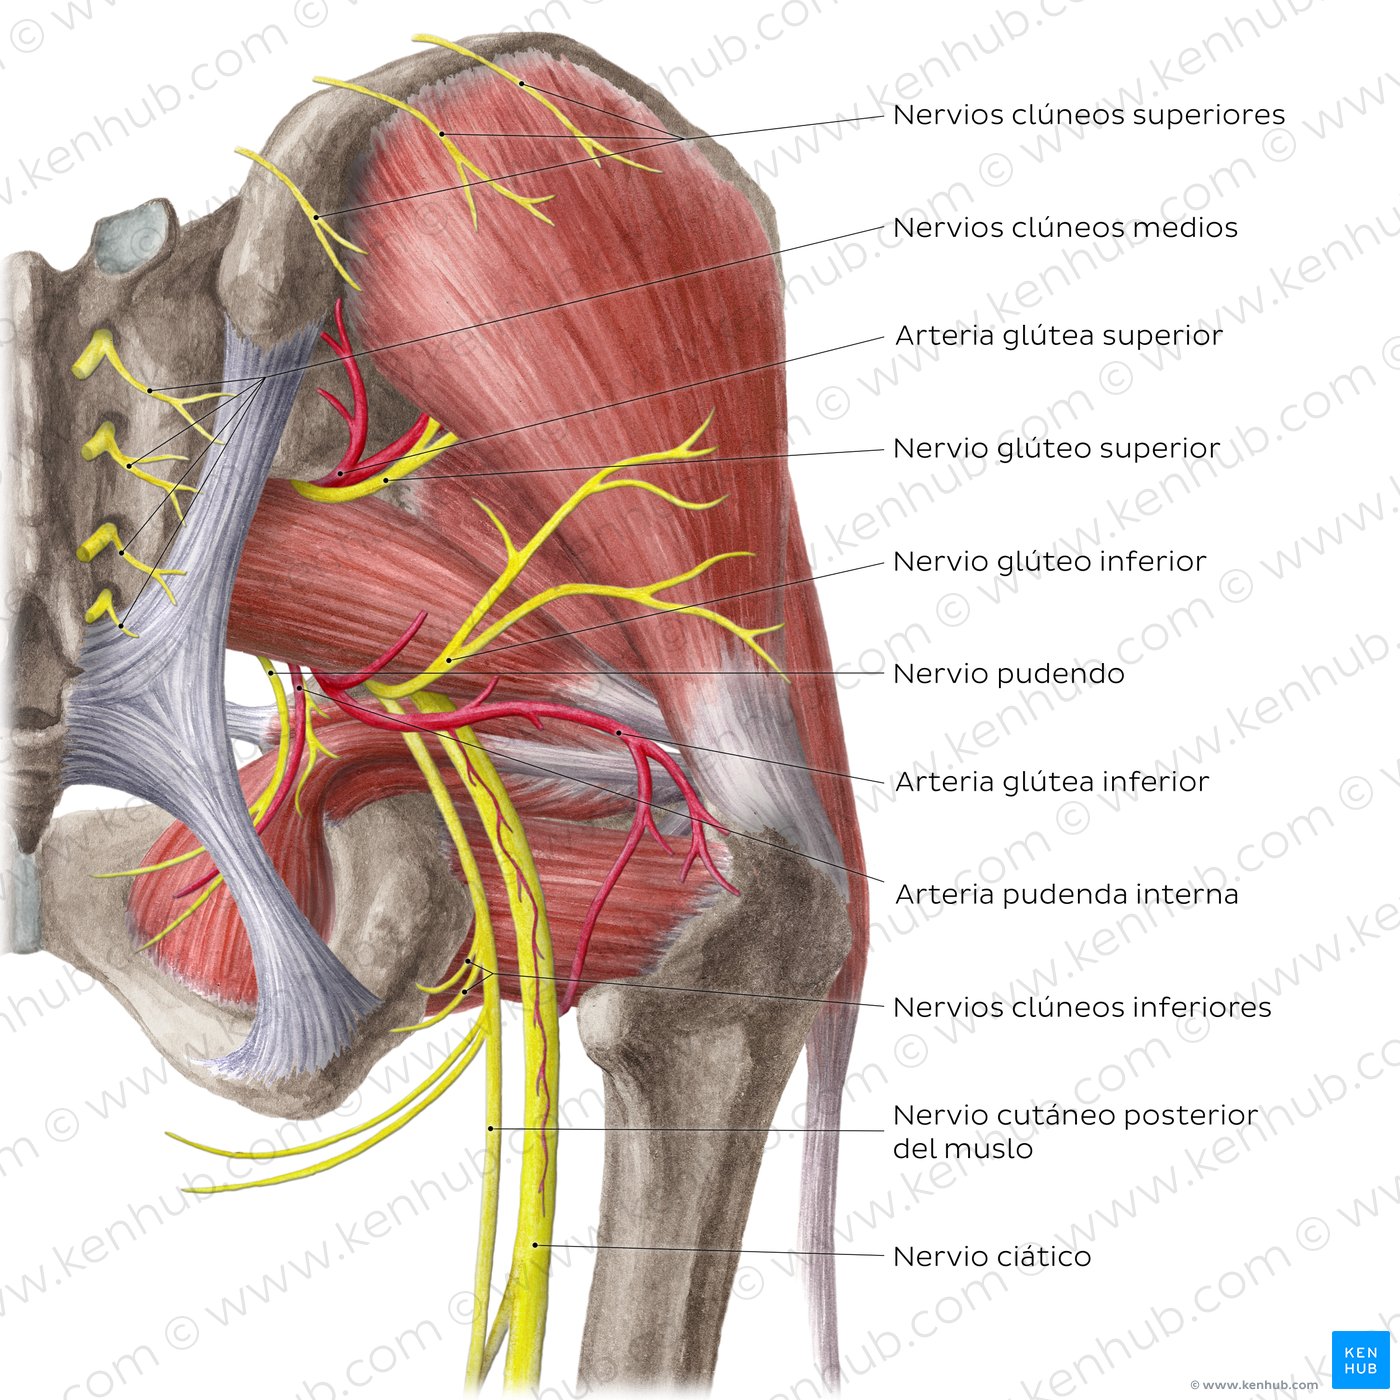 Vista posterior de las arterias y nervios de la cadera y el muslo